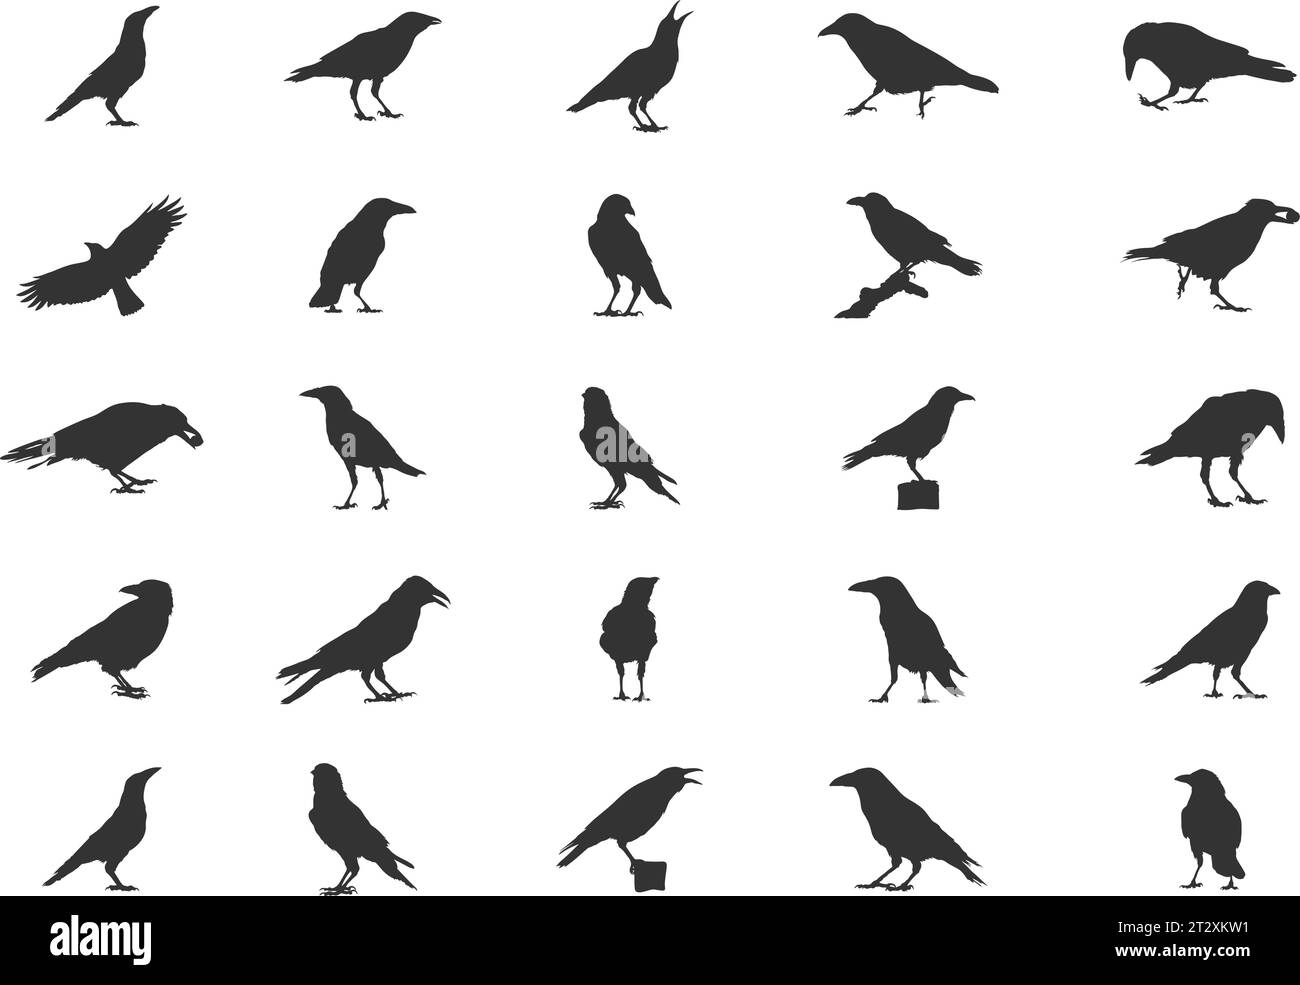 Silhouettes de Carrion Crow, silhouettes de Carrion Crow Flying, silhouettes de Crow, Carrion Crow SVG, Carrion Crow Vector Set Illustration de Vecteur